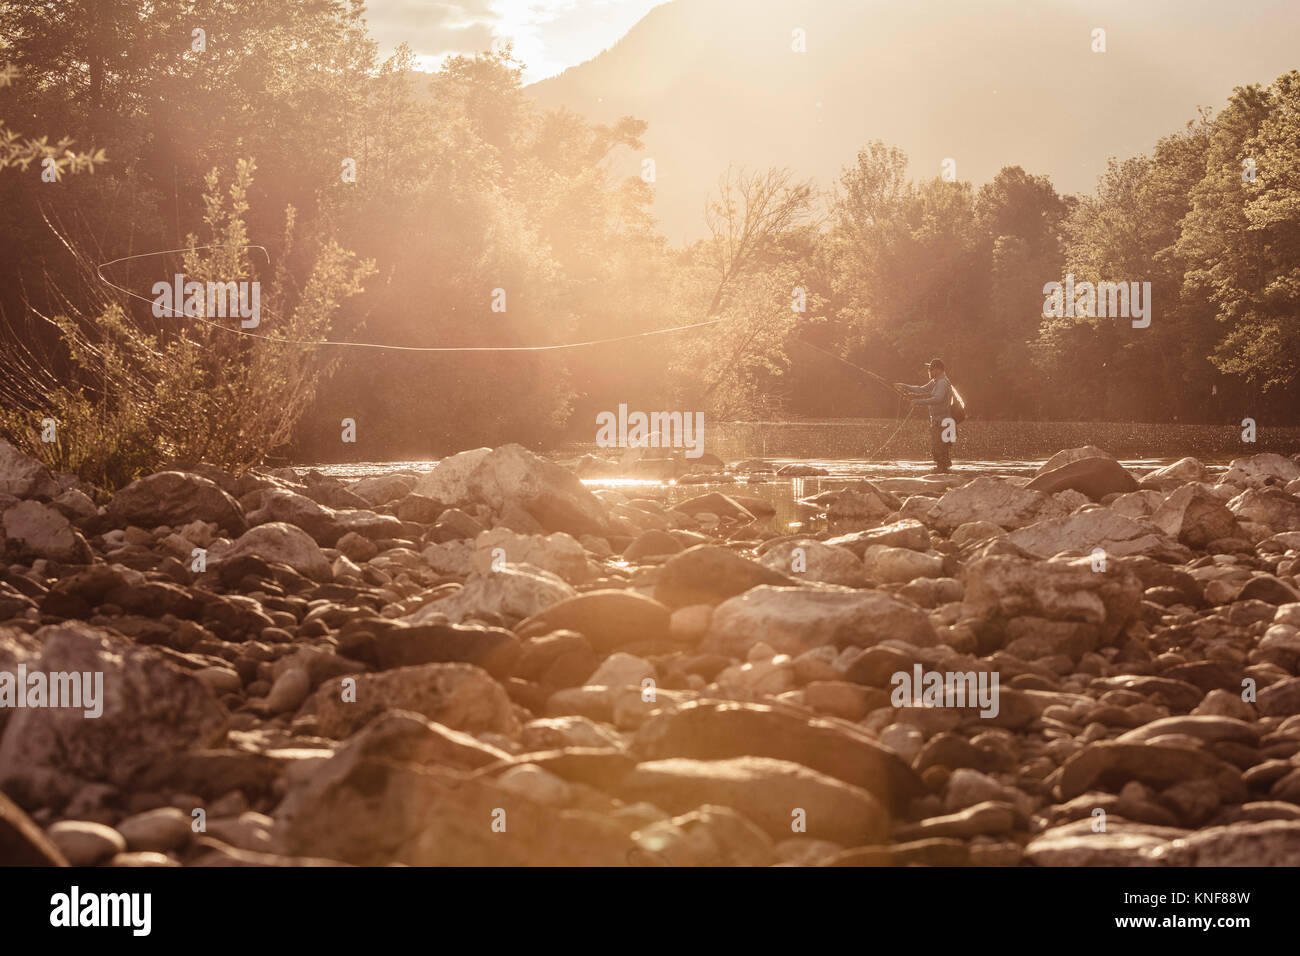 Fisherman casting fishing line in sunlit river, Mozirje, Brezovica, Slovenia Stock Photo